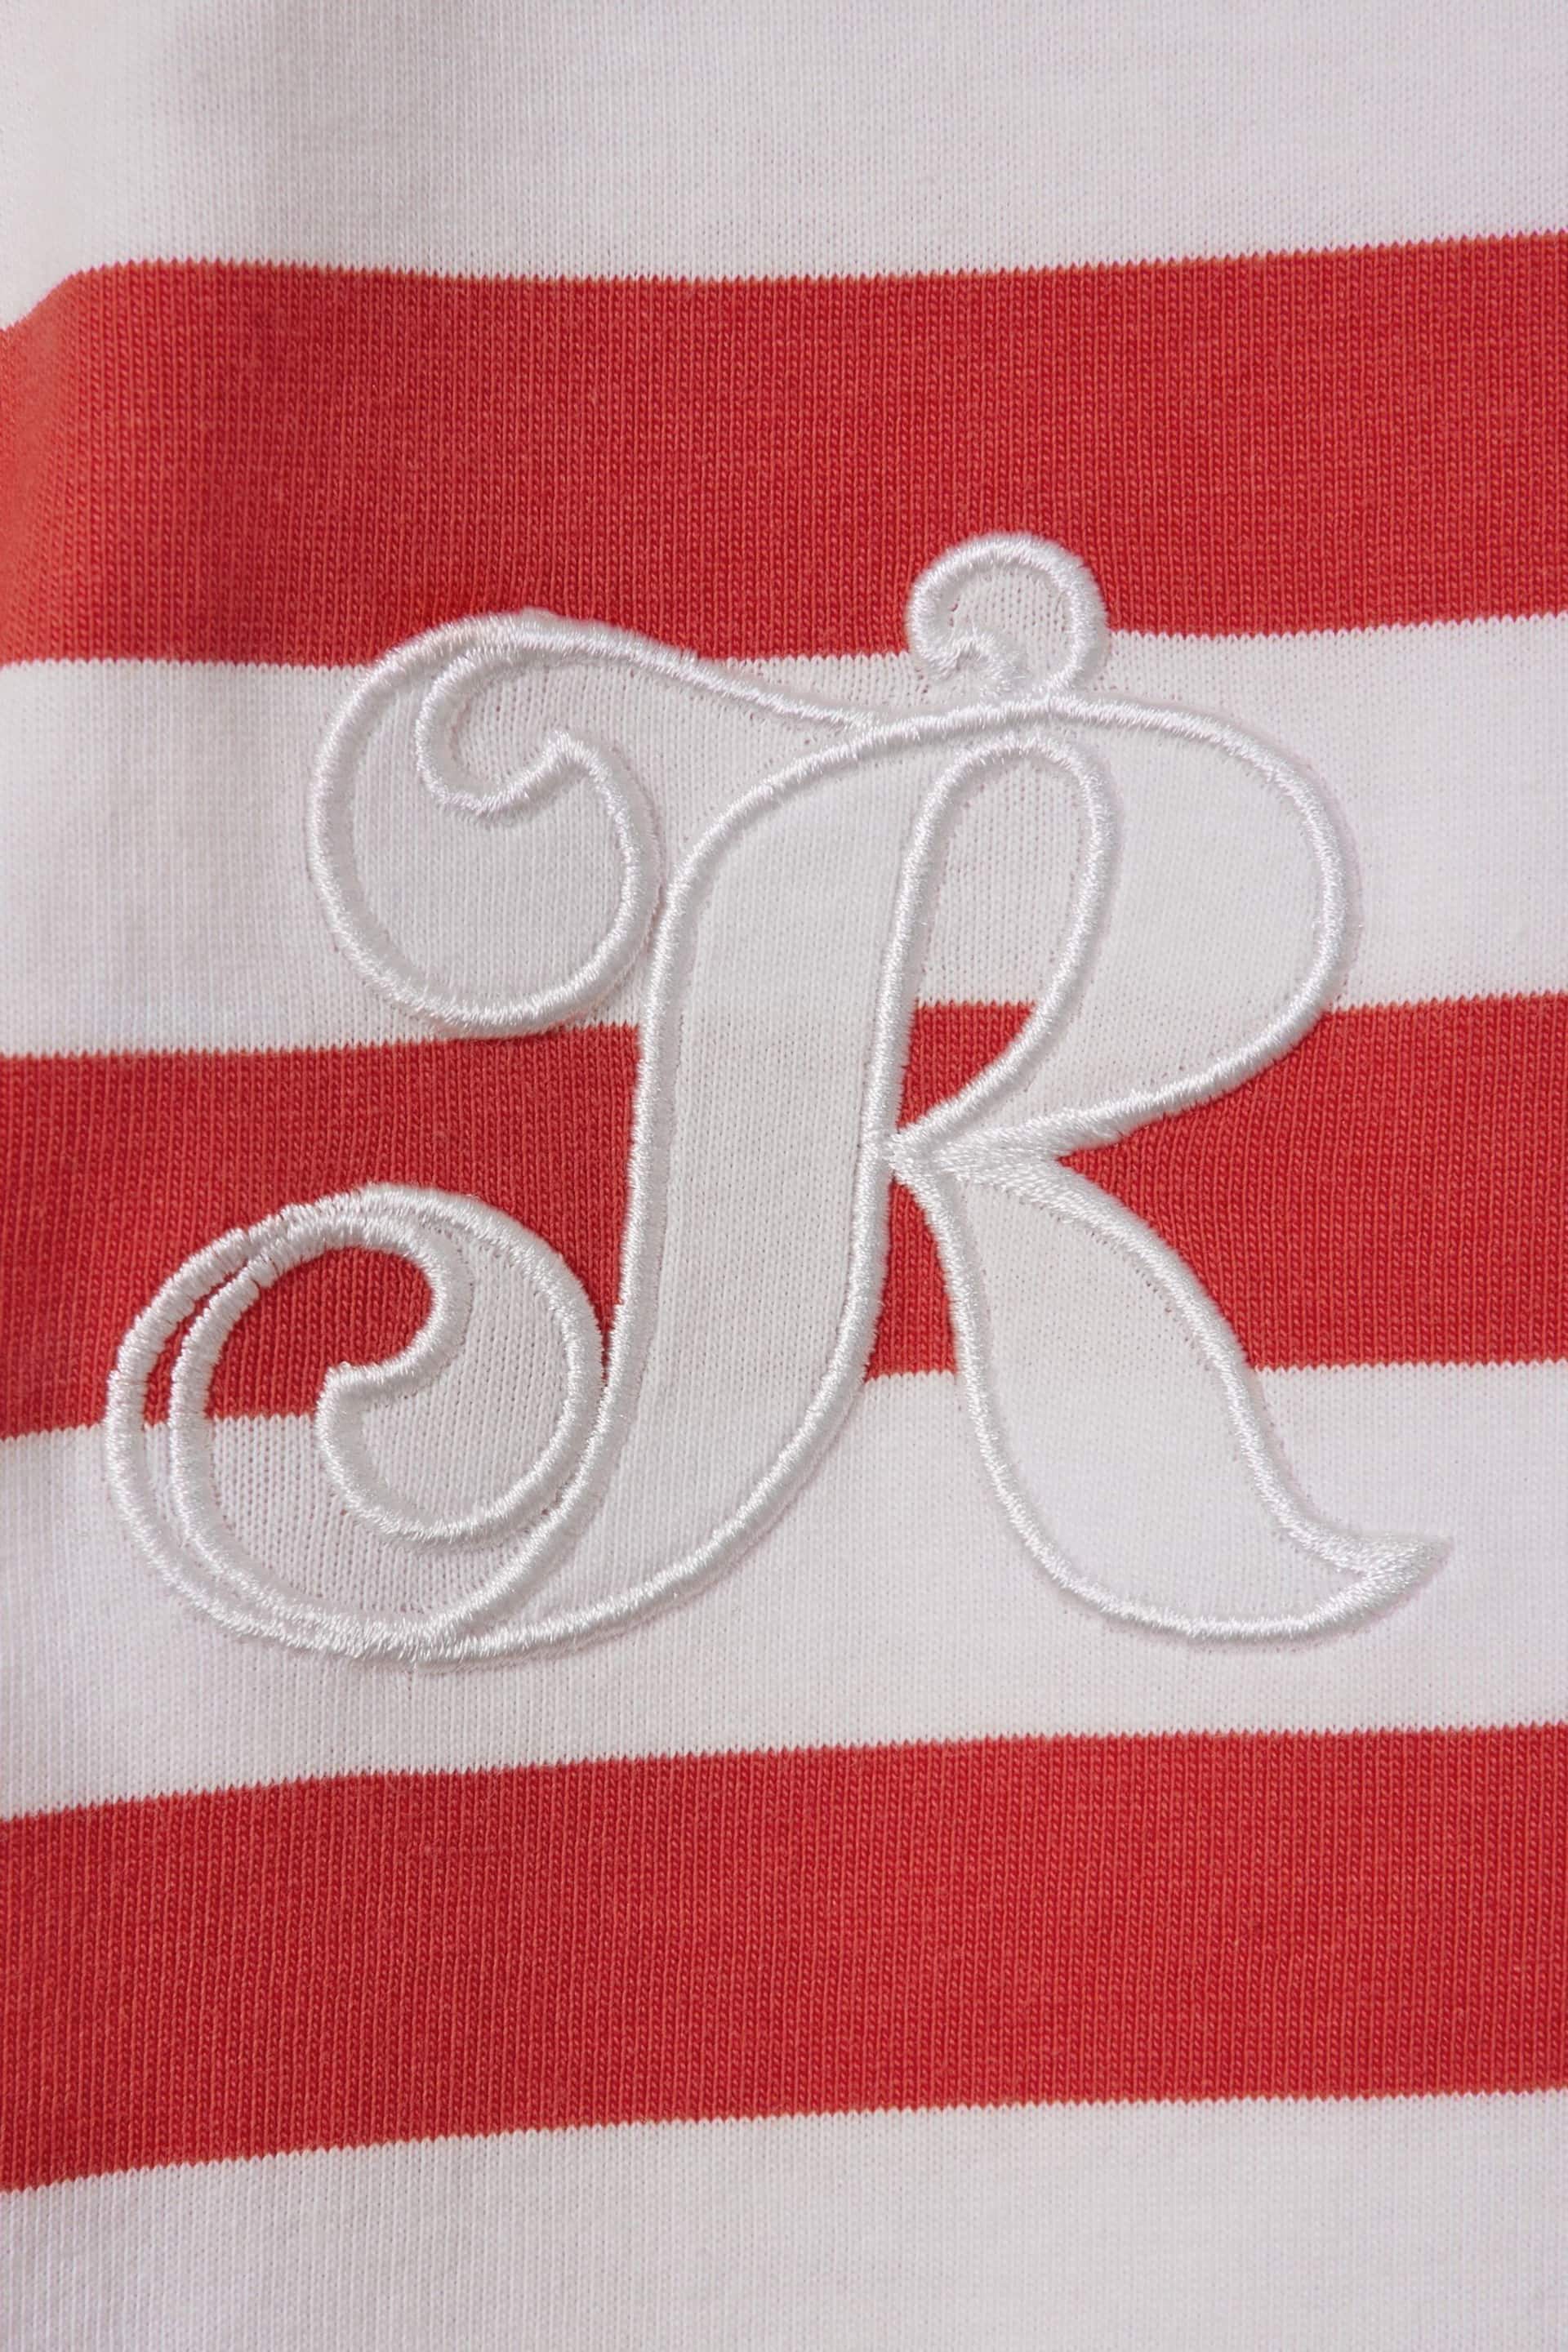 Reiss Red Imogen Senior Cotton Striped Sleeveless Vest - Image 4 of 4